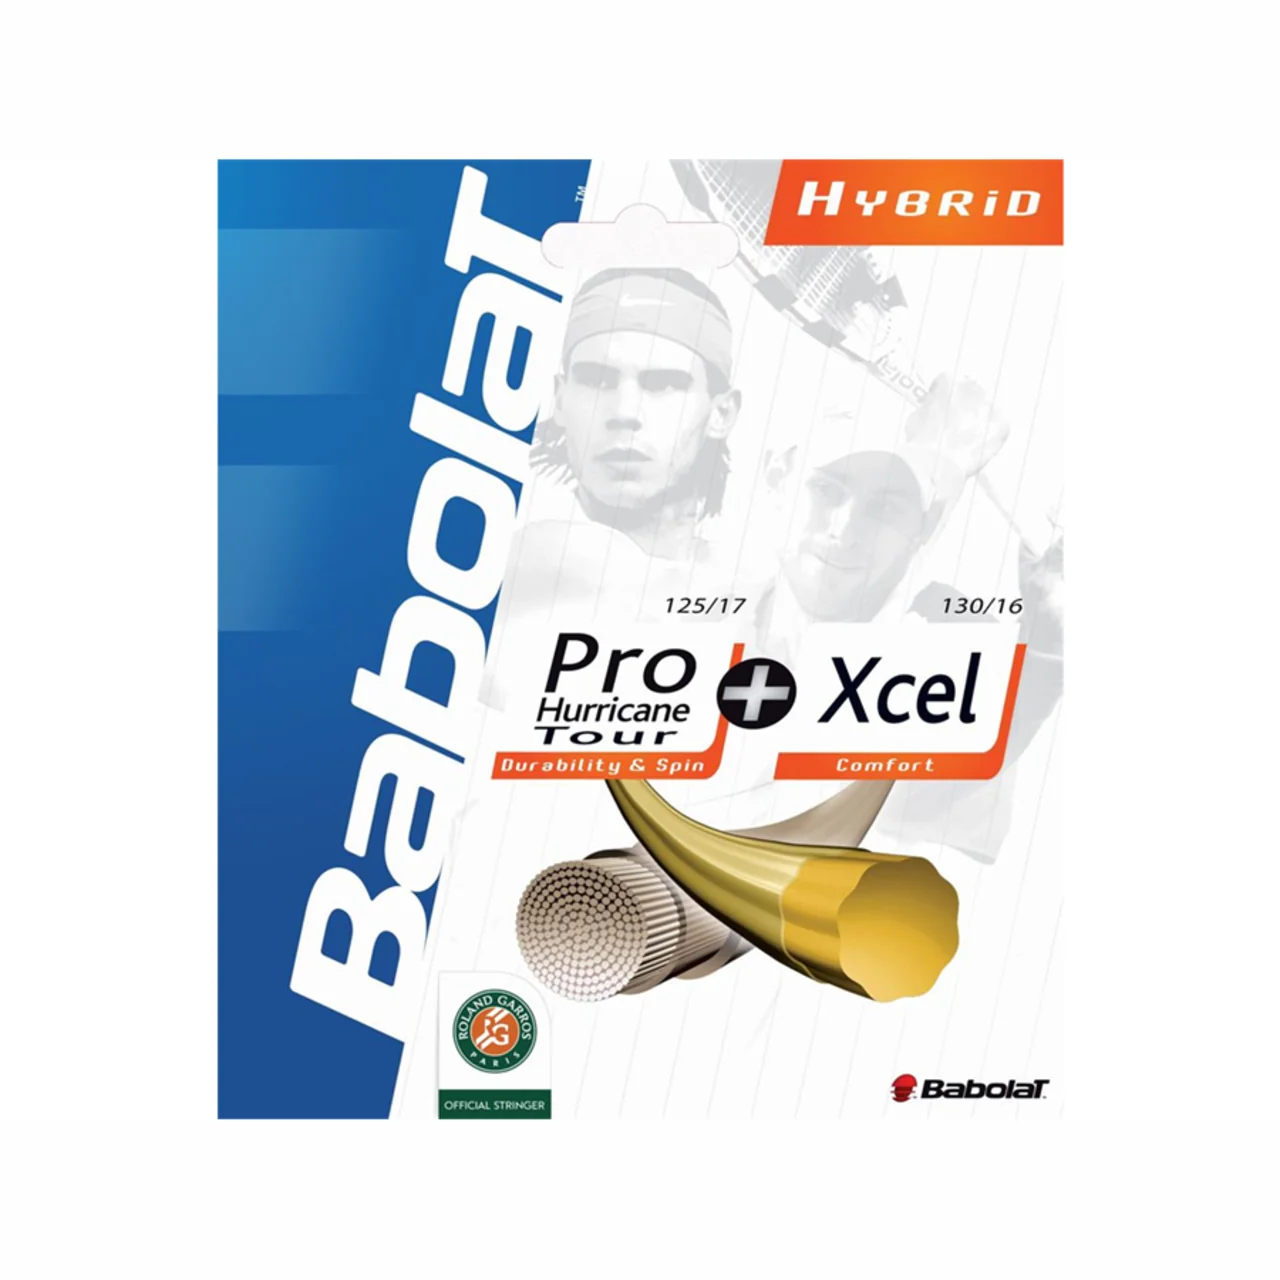 Babolat Pro Hurricane Tour + Xcel Hybrid Set